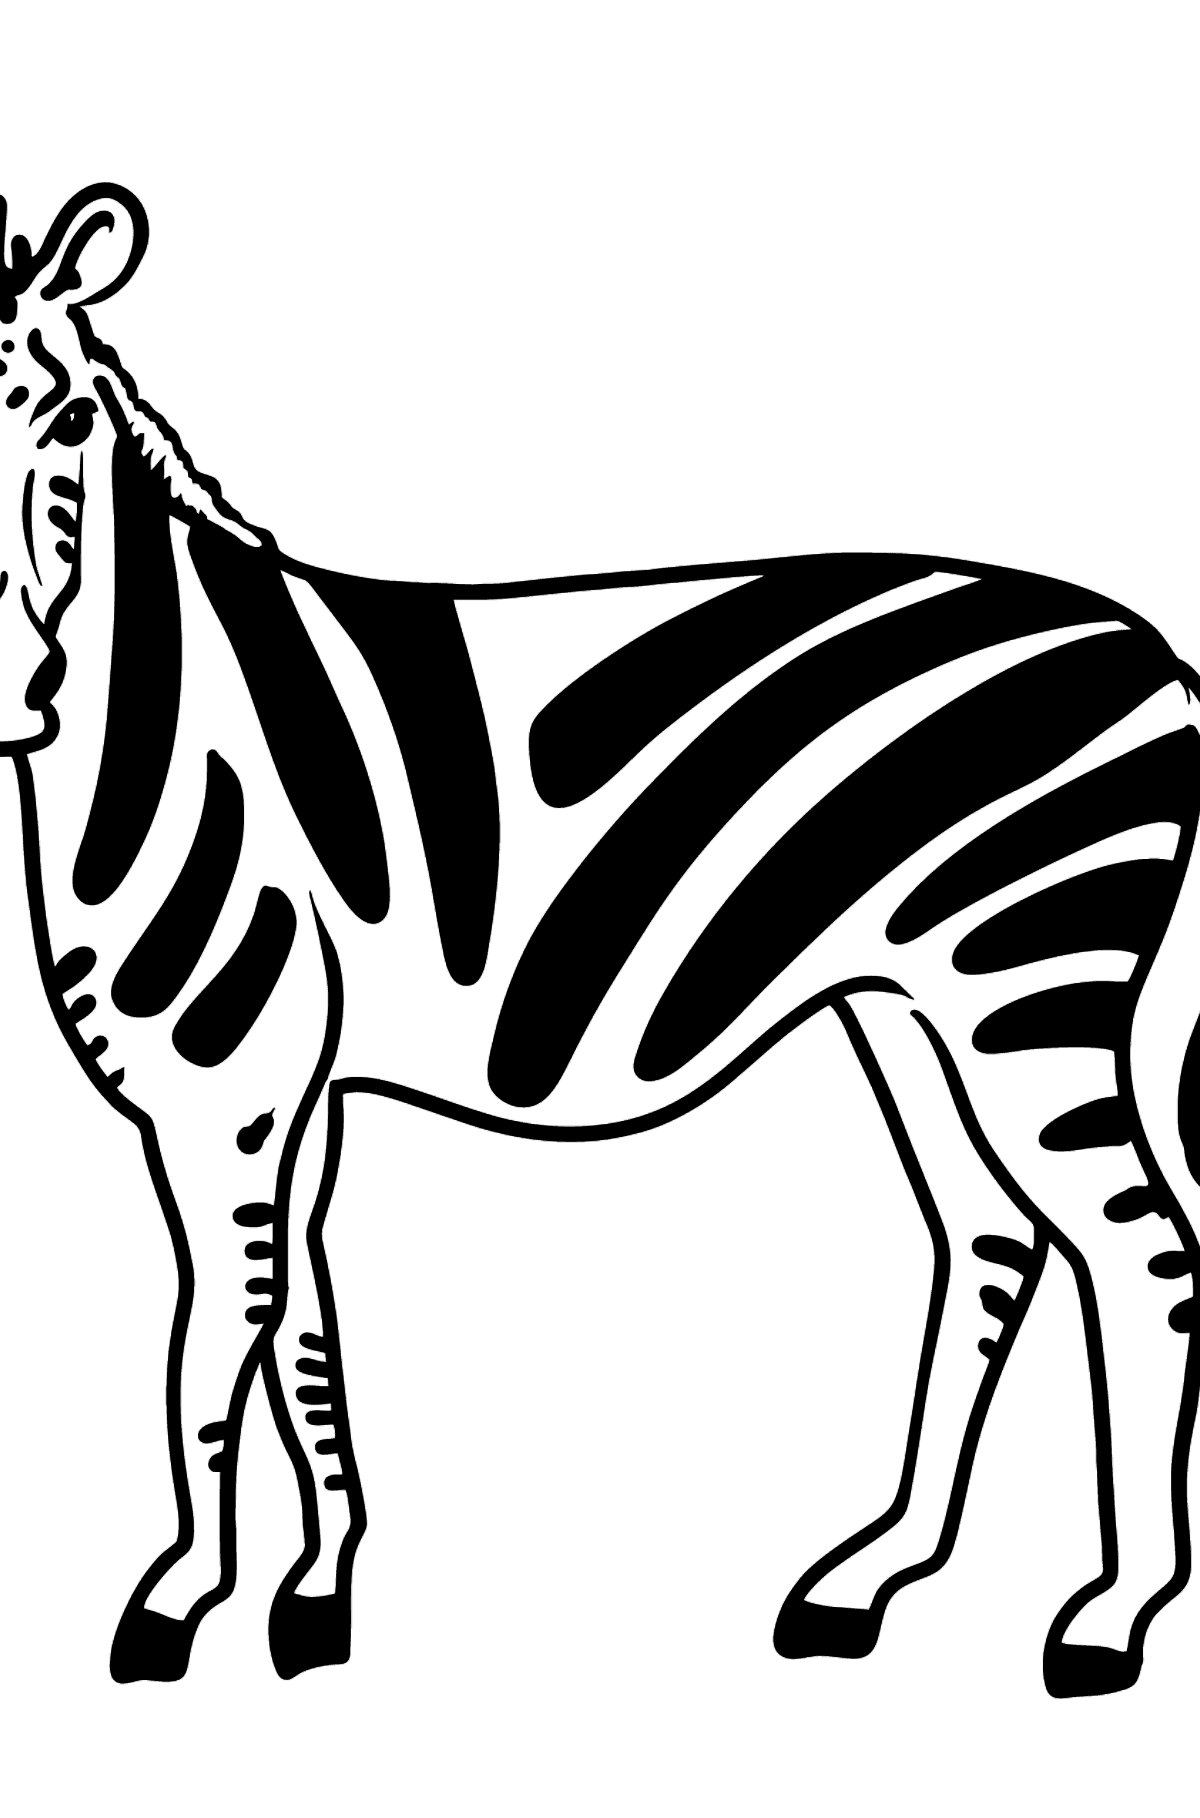 Kleurplaat zebra - kleurplaten voor kinderen